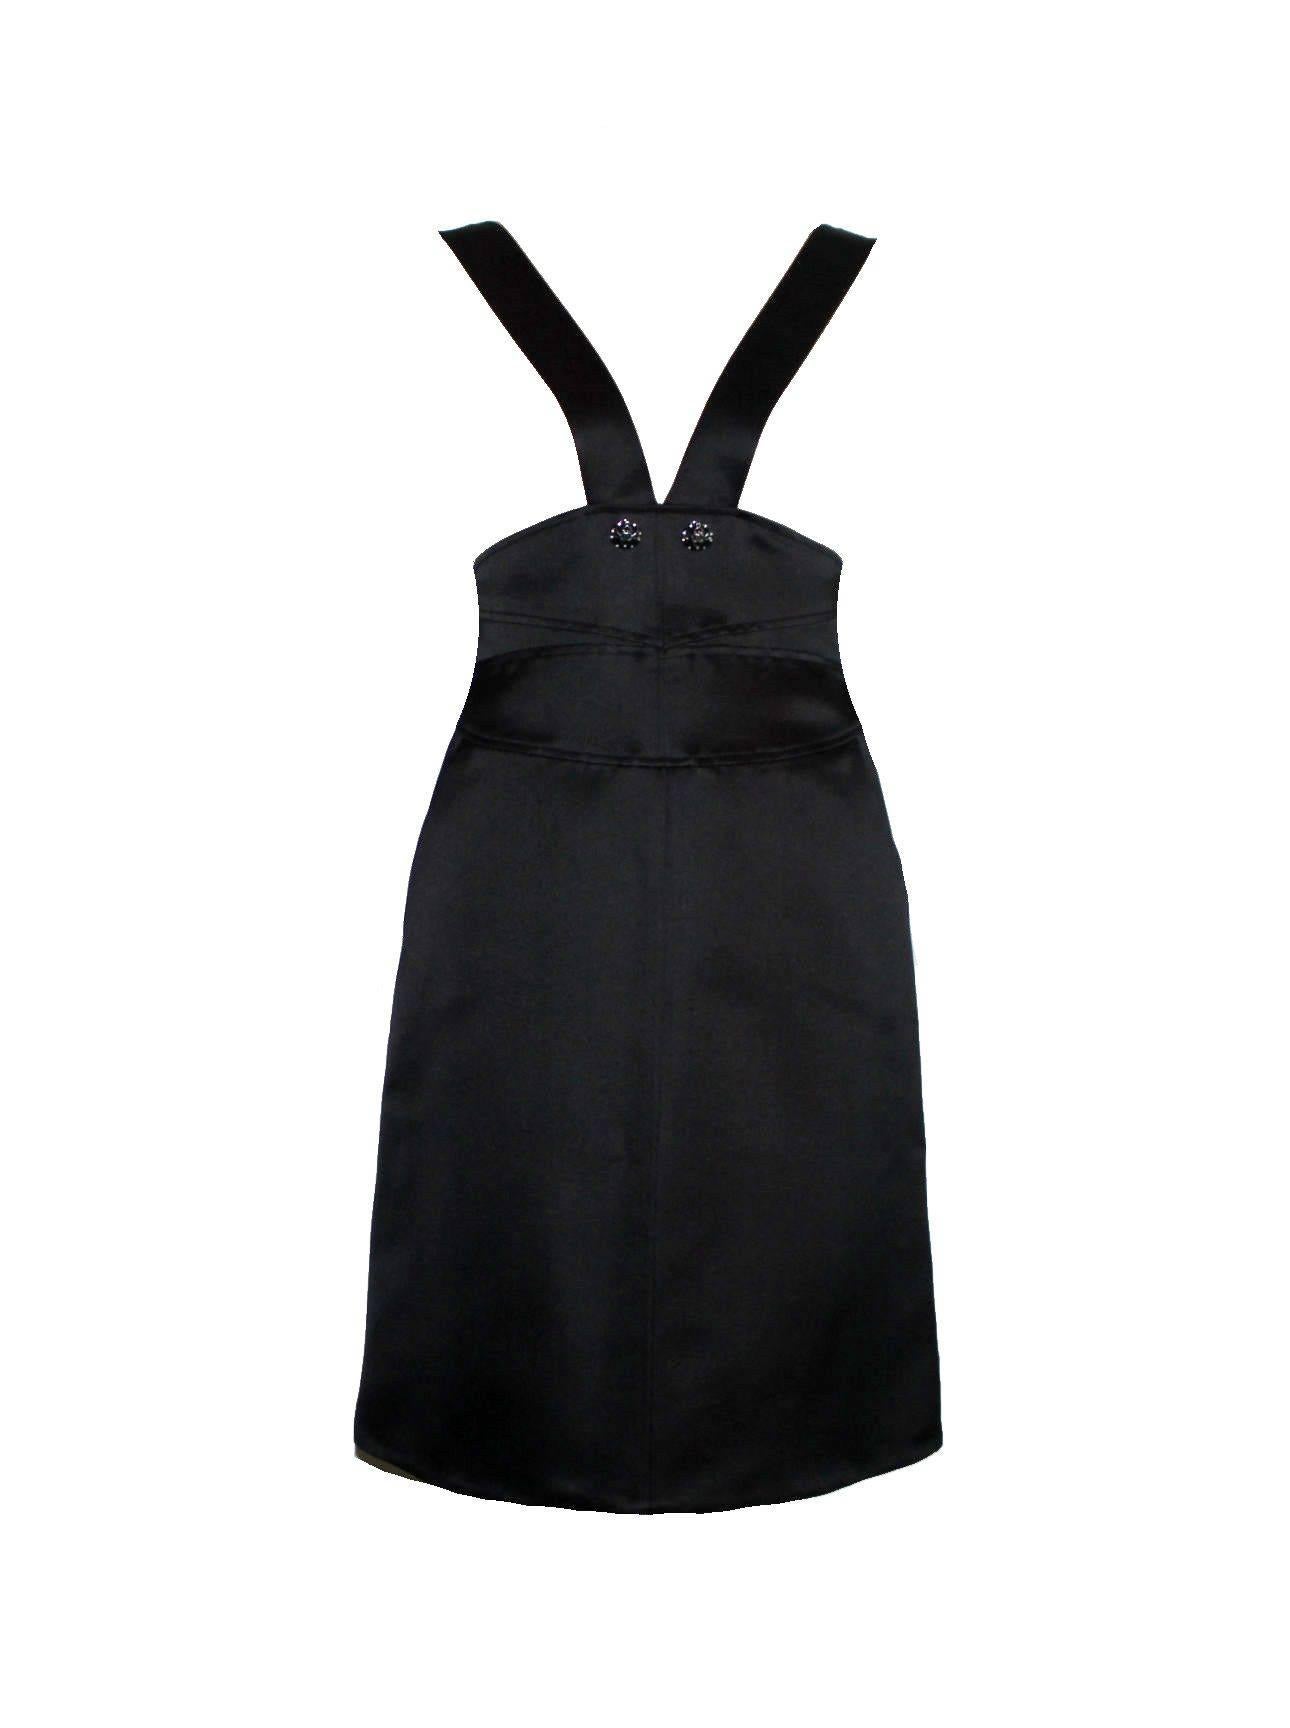 Une version moderne mais classique de la célèbre petite robe noire de Chanel.
Composé de deux pièces, robe et manteau
La robe est dotée d'un col en V profond et de bretelles qui se rejoignent à la taille.
Les bretelles sont maintenues à la taille